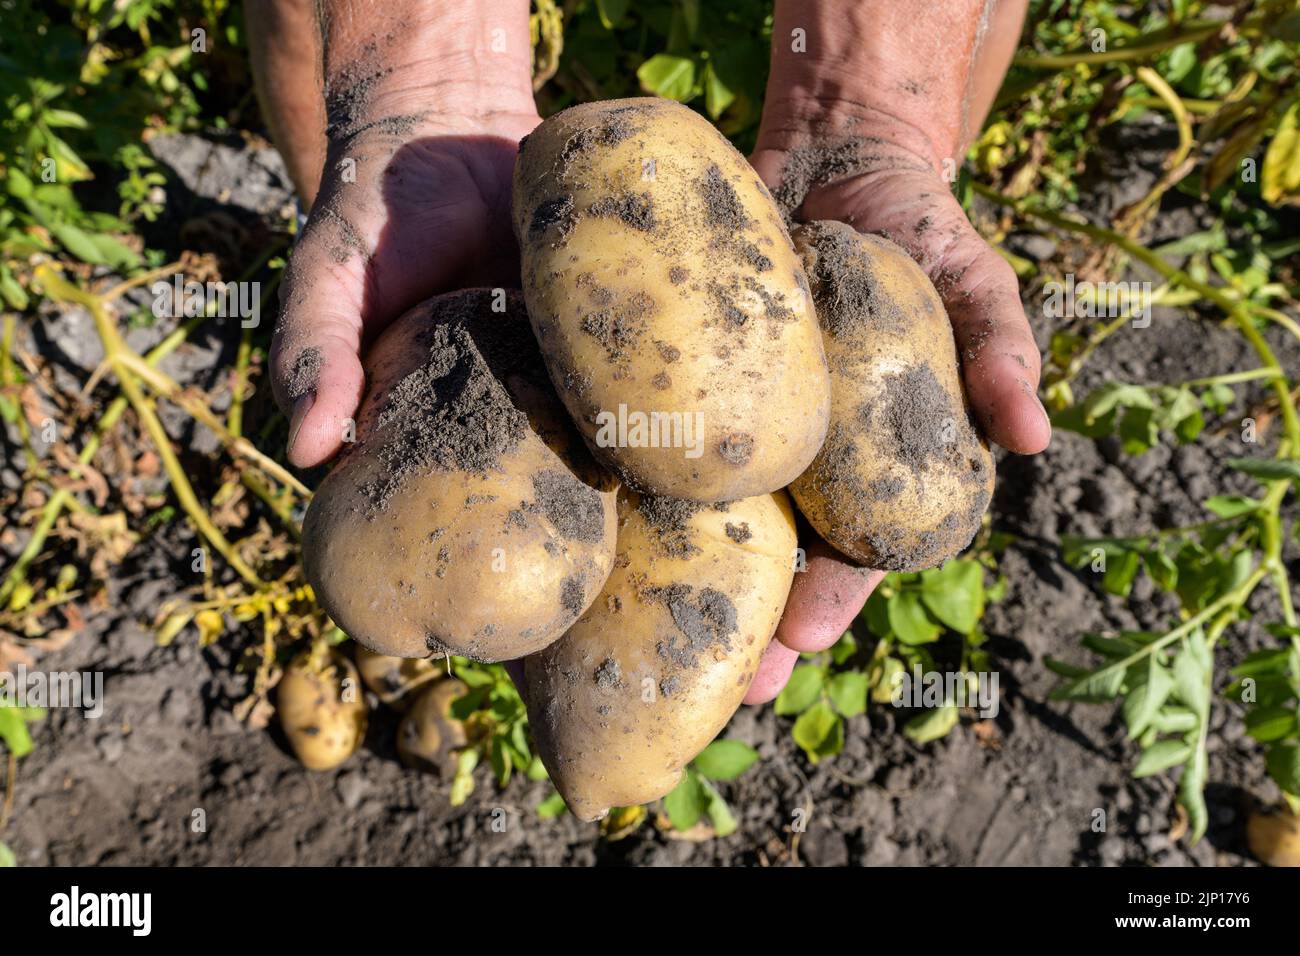 Un raccolto fresco di patate tenuto sopra il suolo in mani maschili. Foto Stock